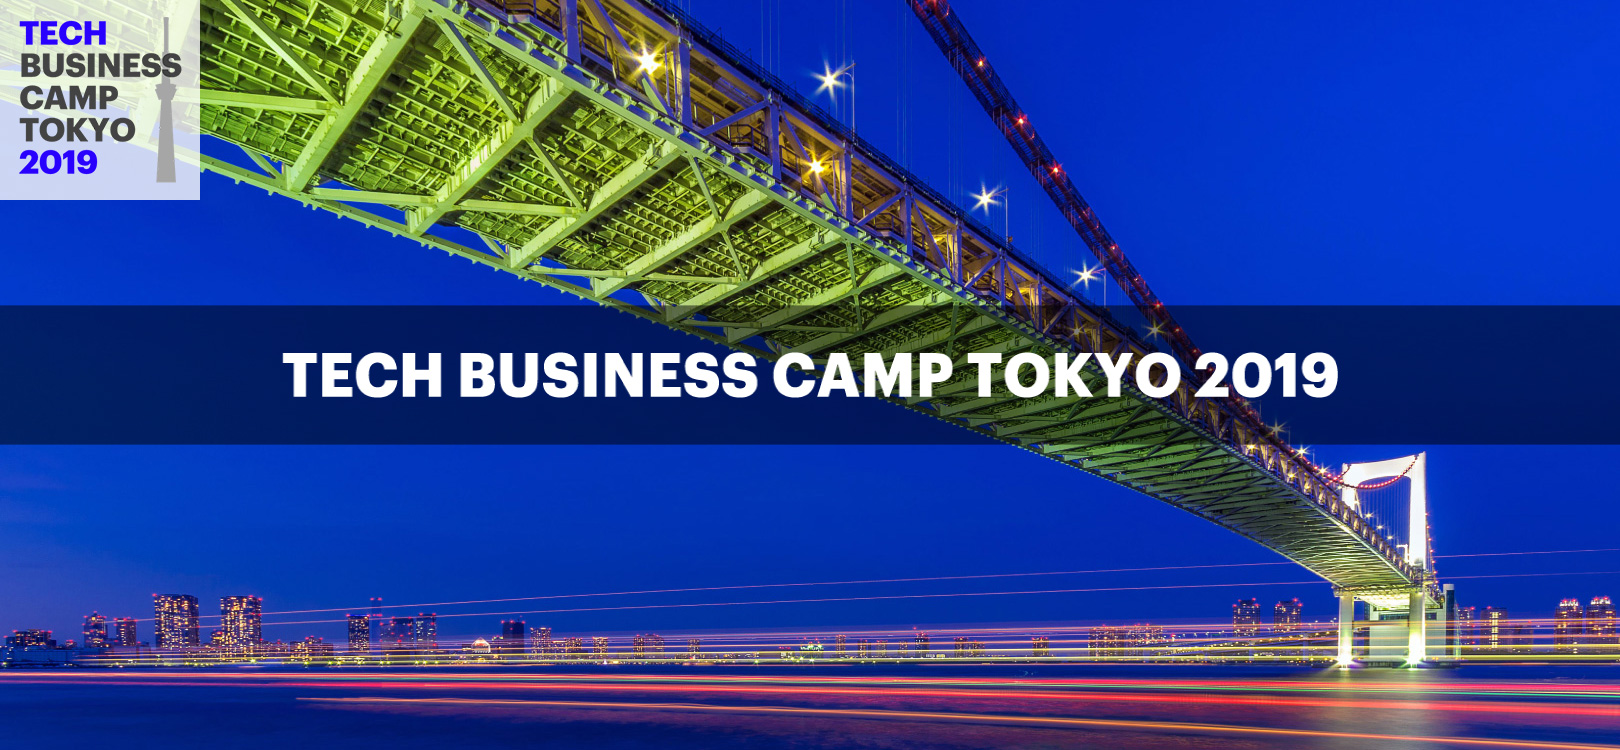 NEW TECH BUSINESS CAMP TOKYO 2019